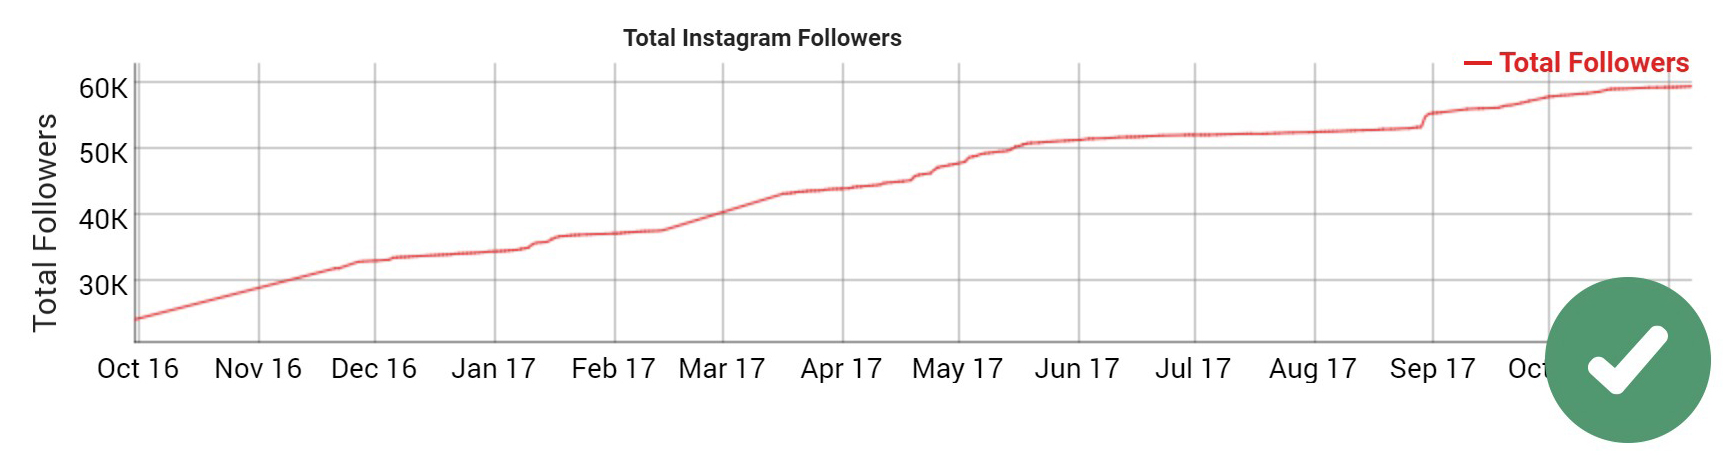 Good followers curve